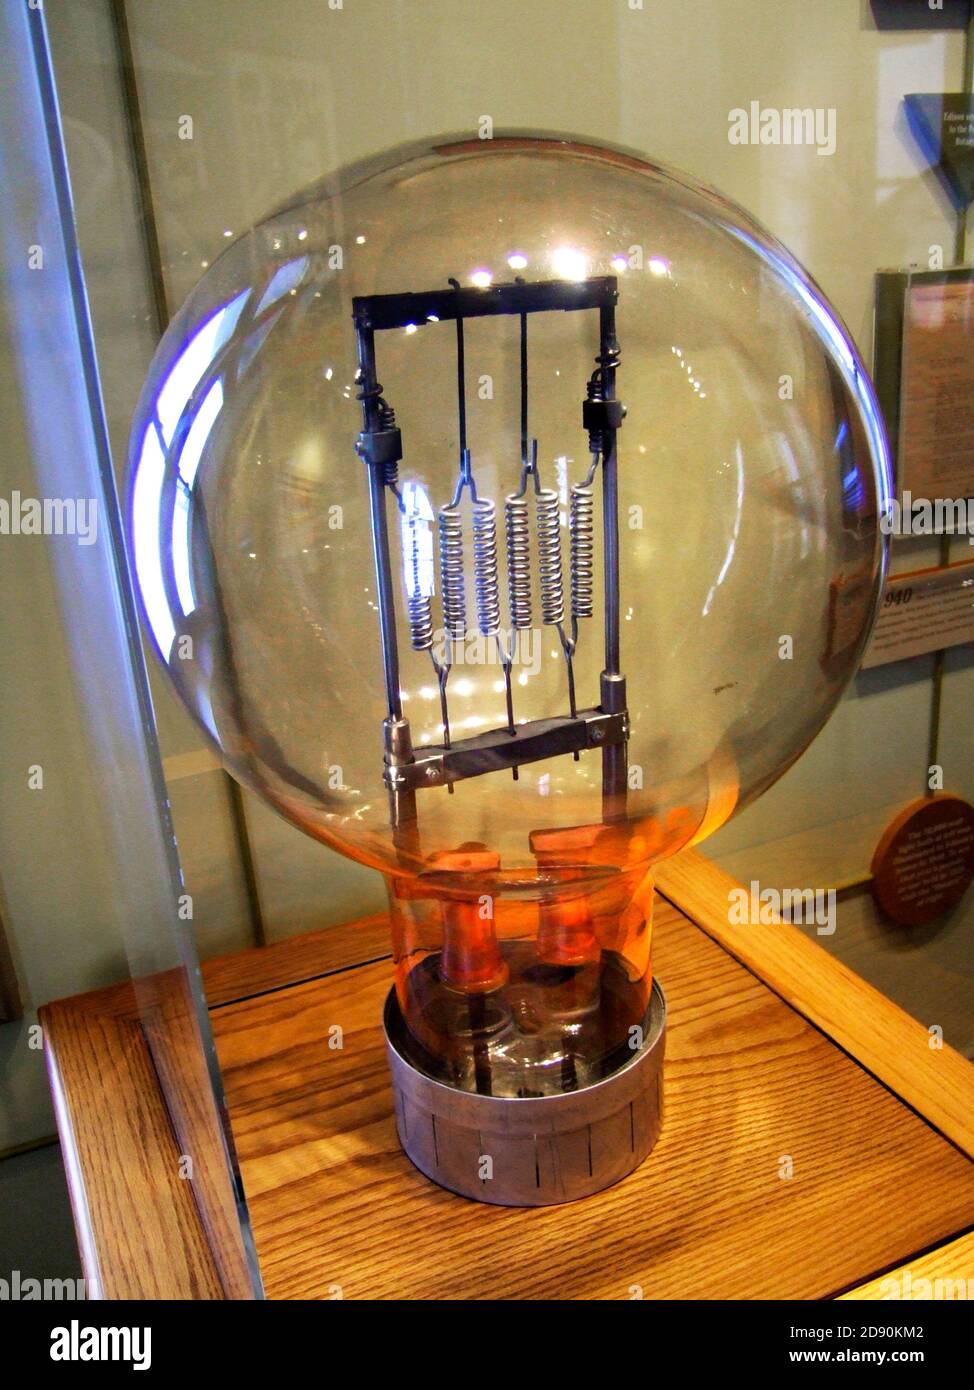 Reproduction historique d'une ampoule Thomas alva Edison Exposition dans son musée de la ville pour garçons à Port Huron Michigan Banque D'Images